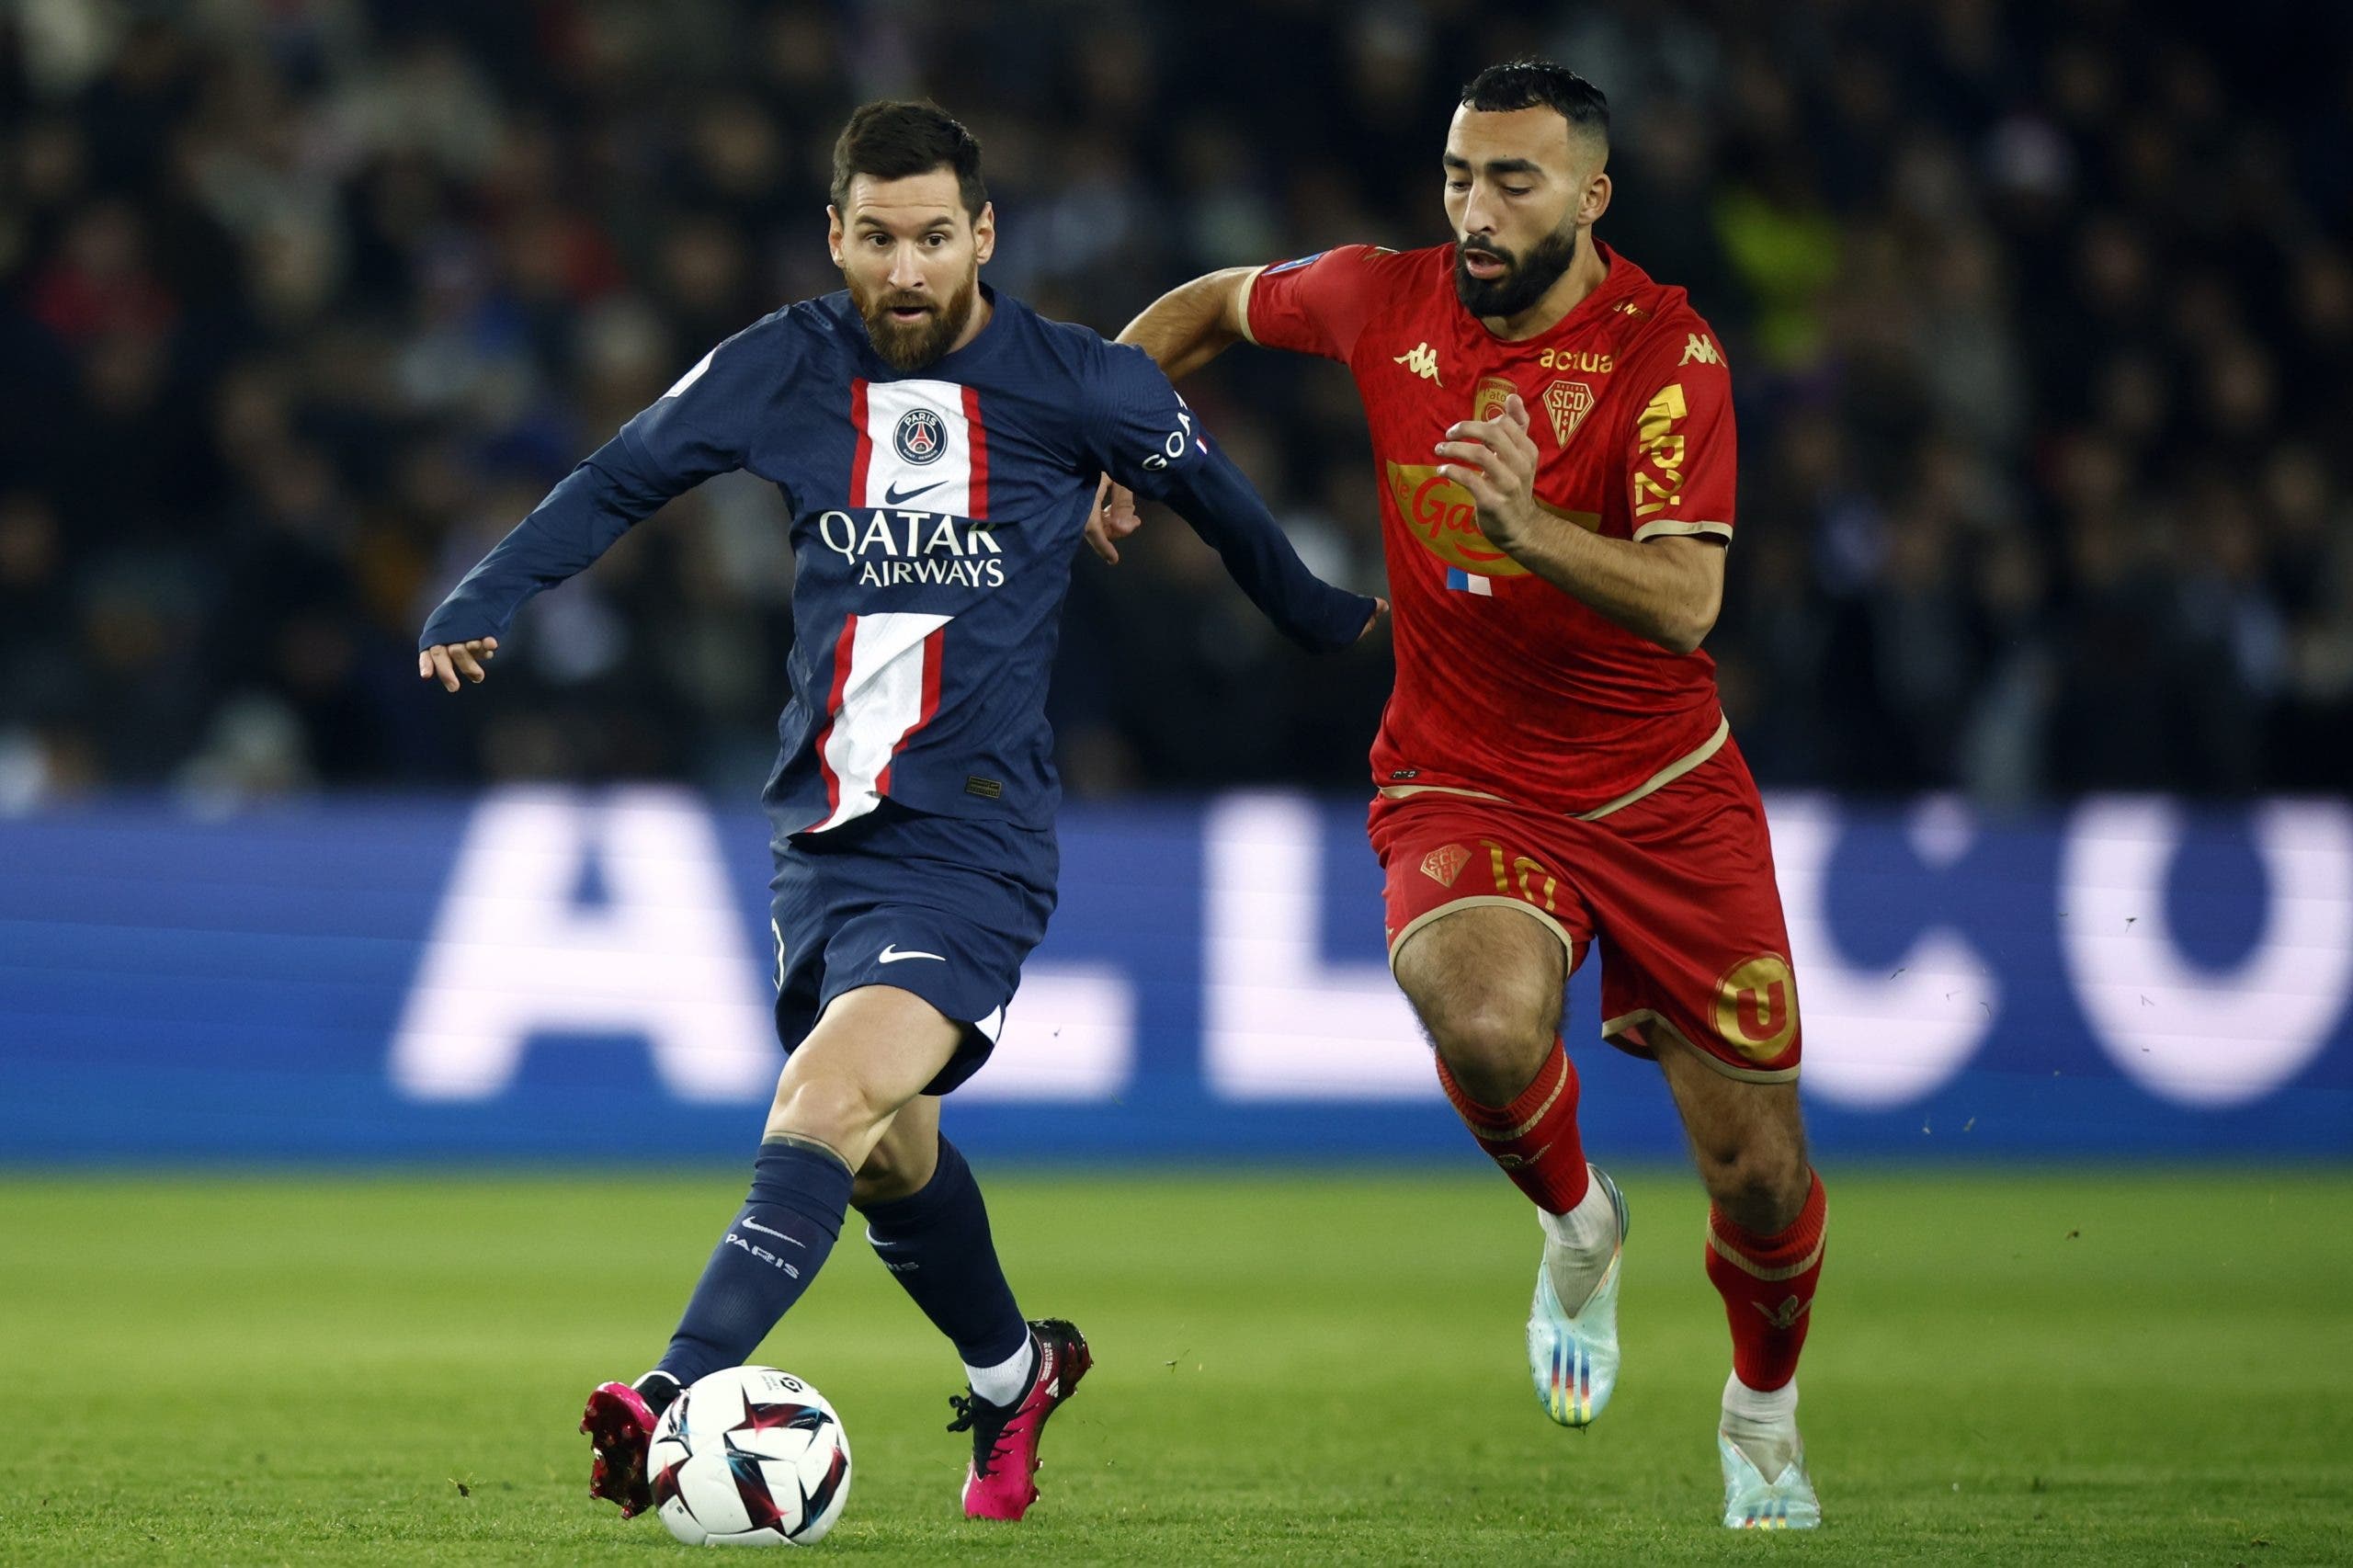 Messi anota en su regreso con el PSG, supera 2-0 al Angers